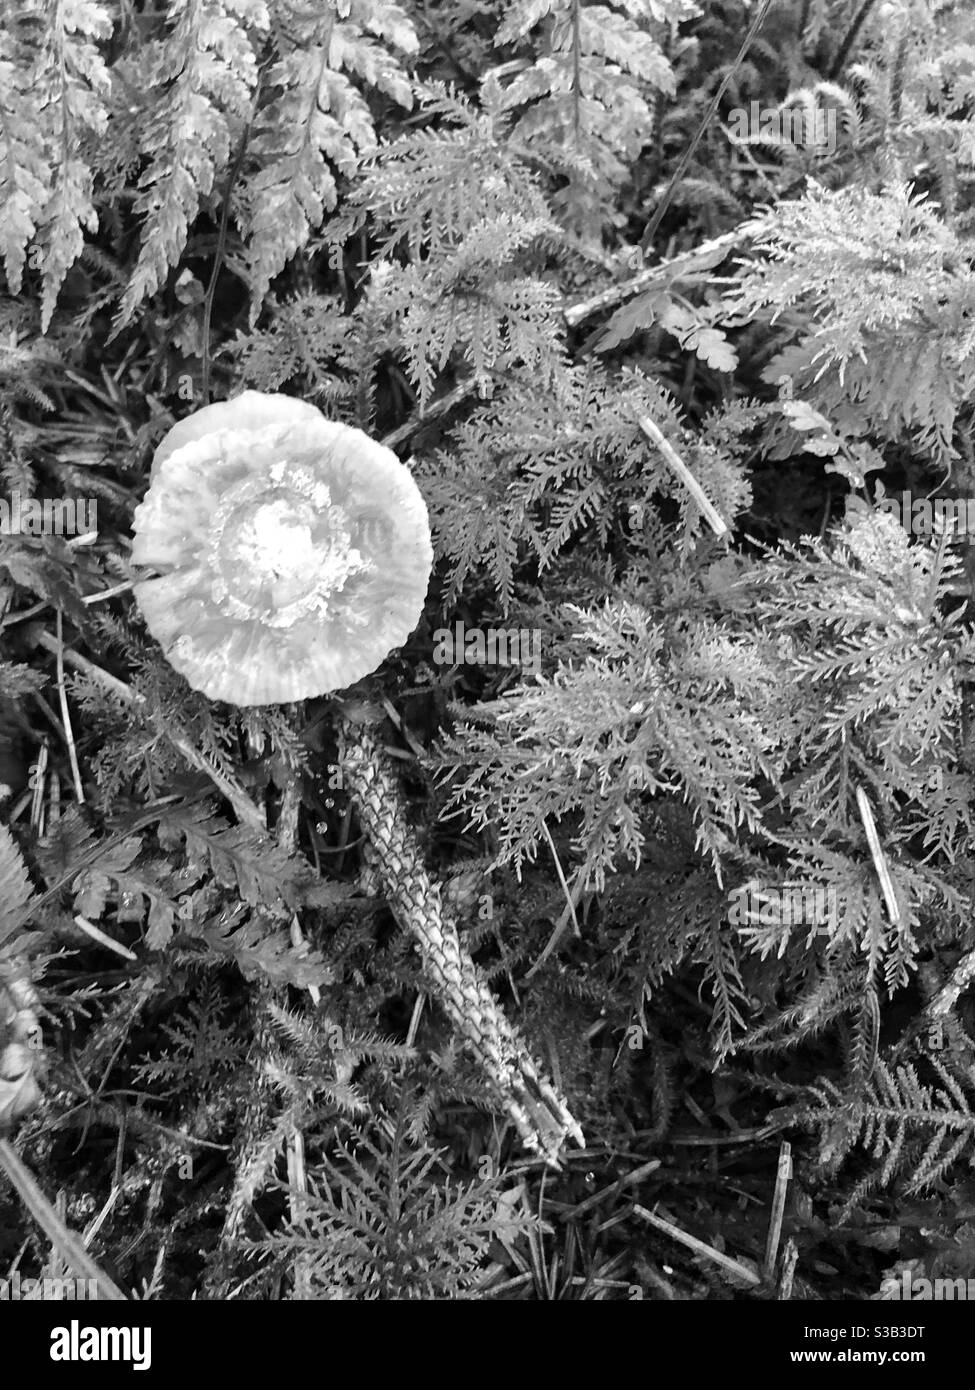 Champignons sur fond forestier en noir et blanc Banque D'Images